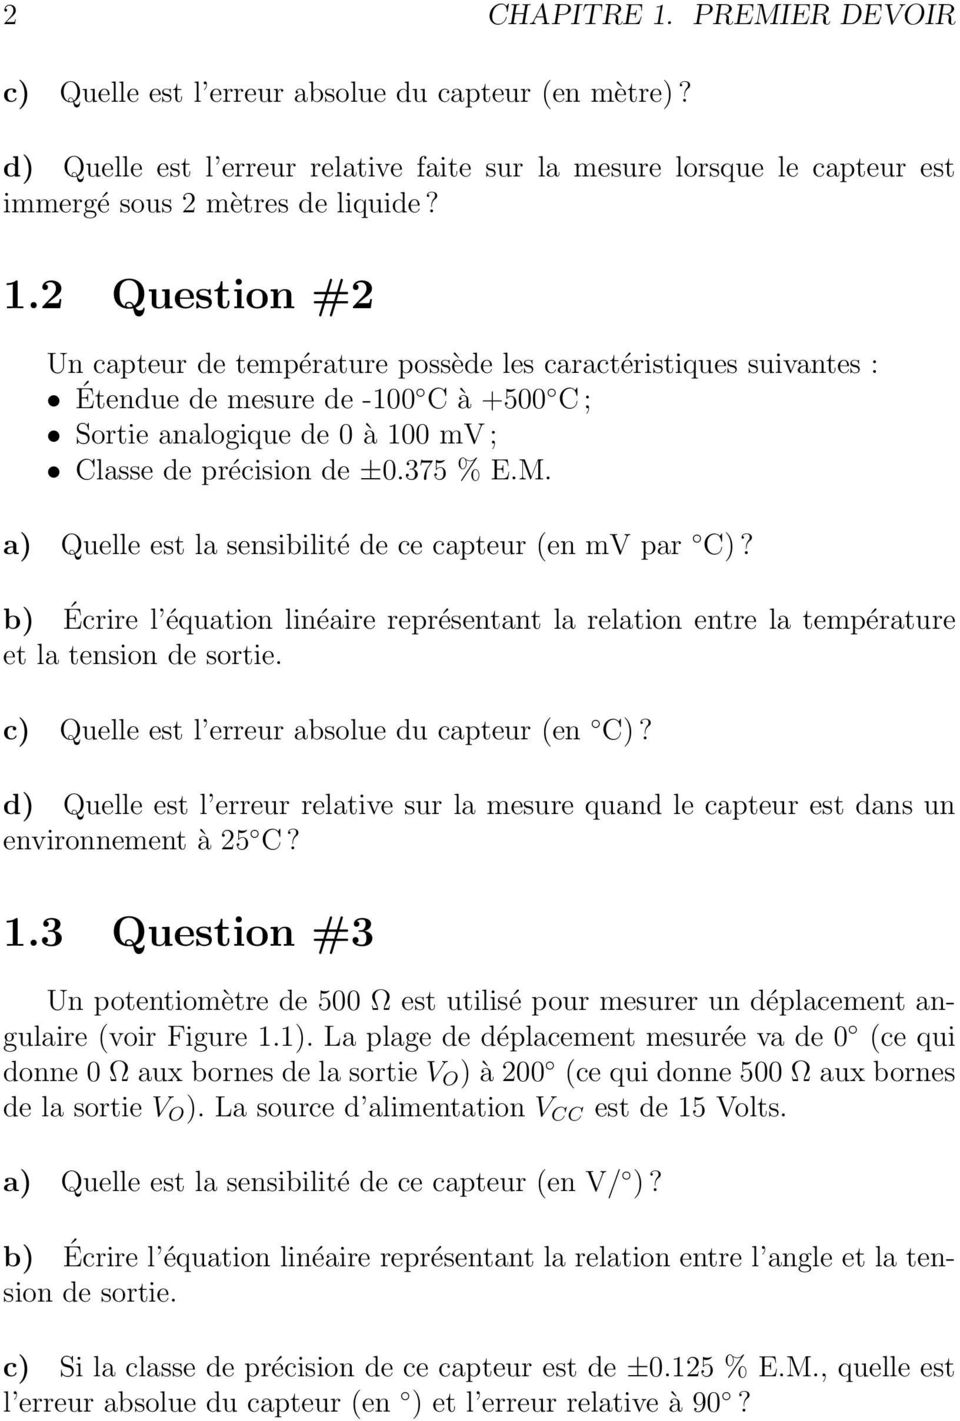 c) Quelle est l erreur absolue du capteur (en C)? d) Quelle est l erreur relative sur la mesure quand le capteur est dans un environnement à 25 C? 1.